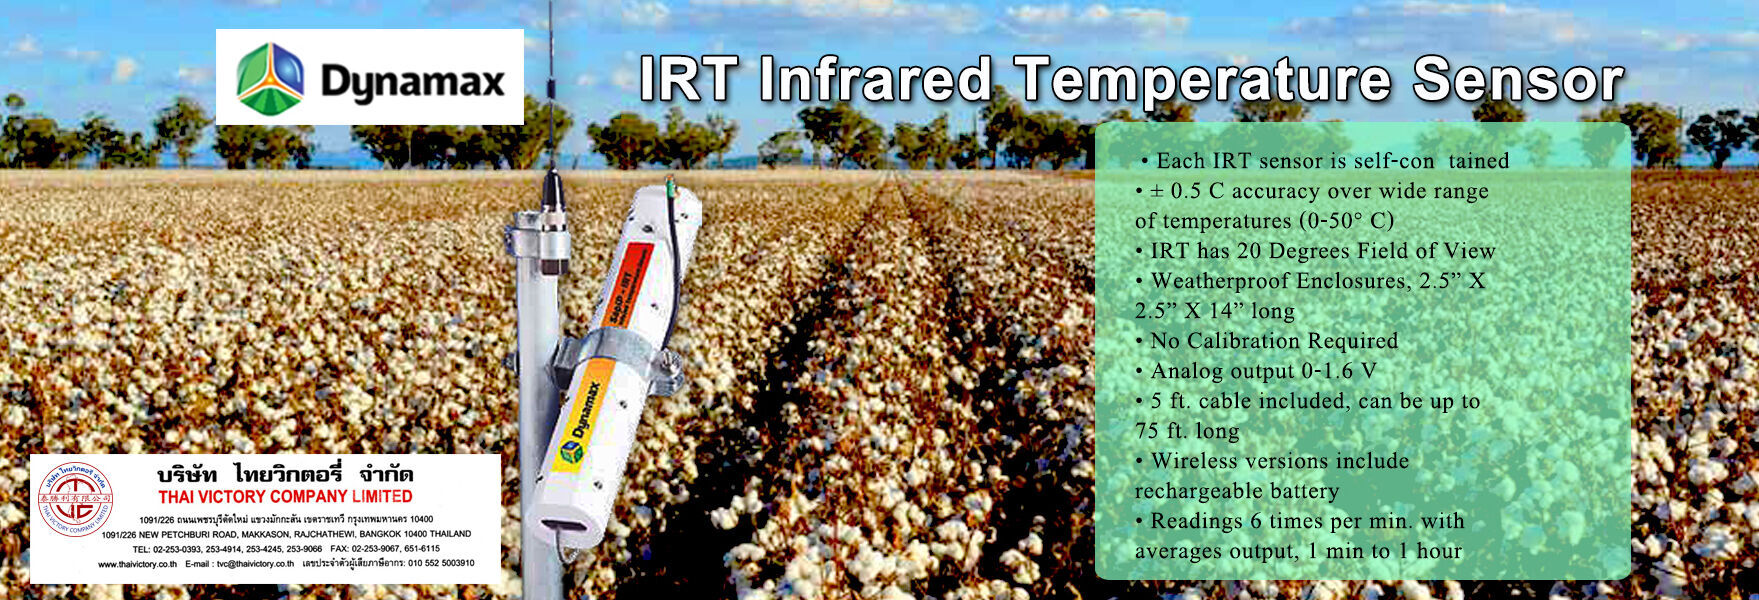 Dynamax IRT Infrared Temperature Sensor